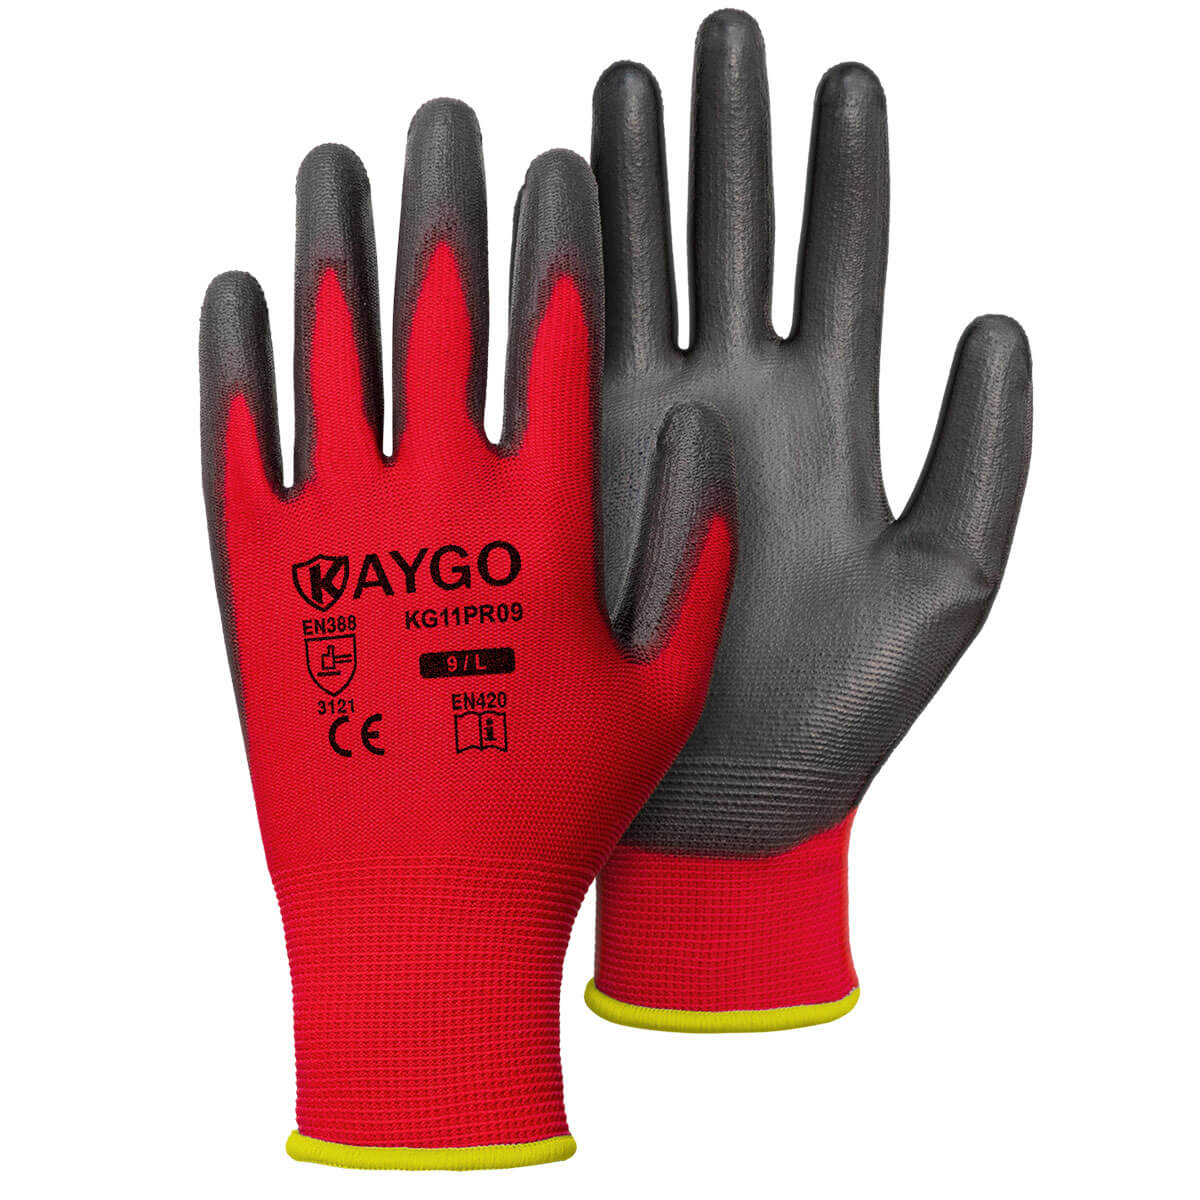 KAYGO Safety Work gloves PU coated-60 Pairs, AYgO Kg11PB,White,Large